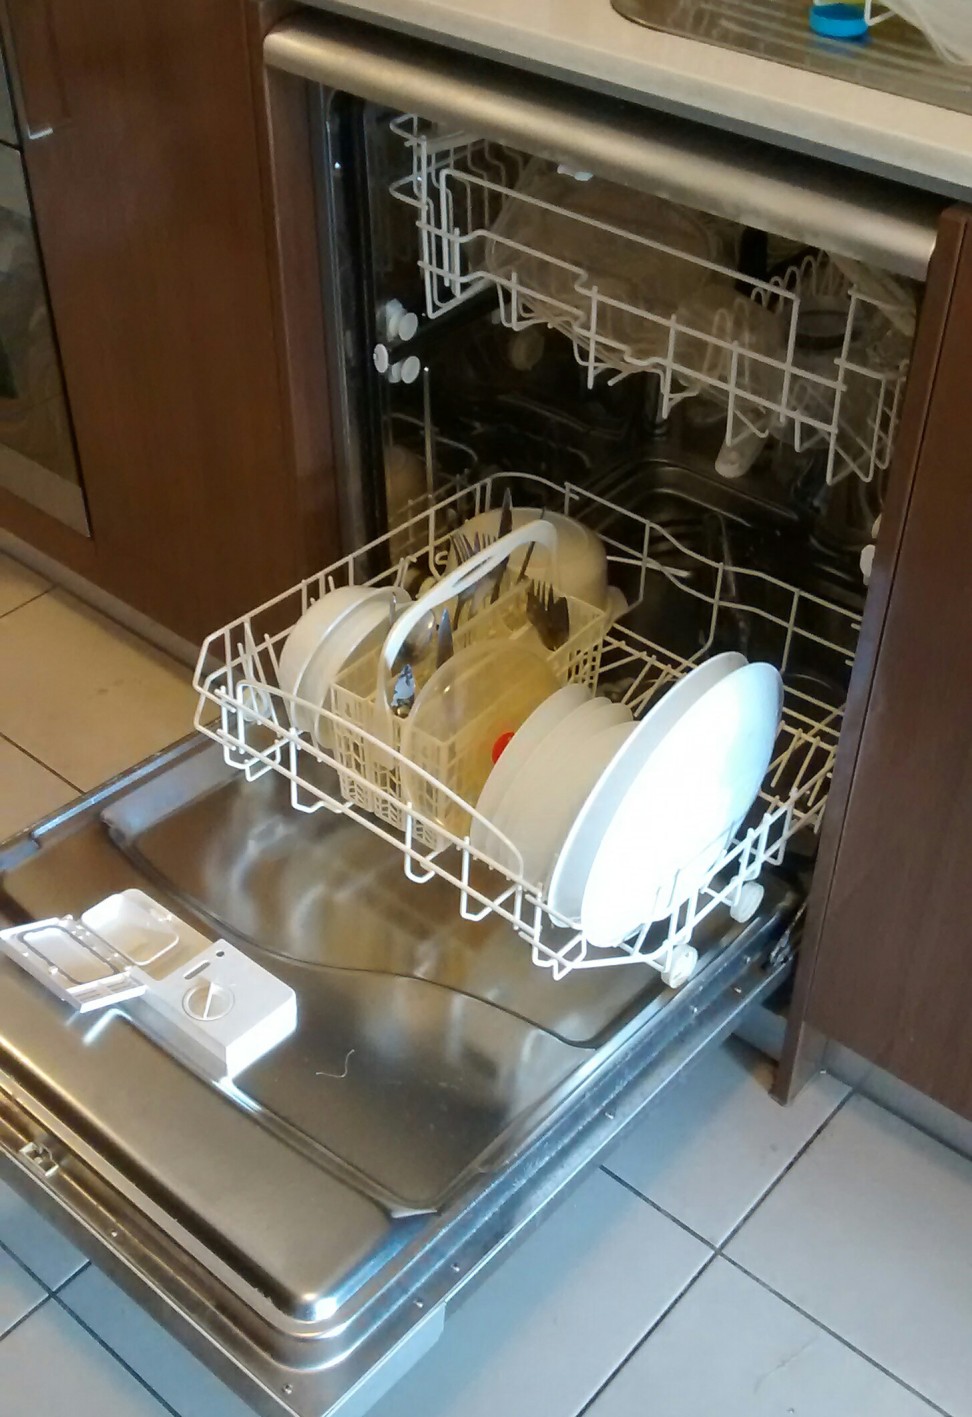 Dishwasher Noise